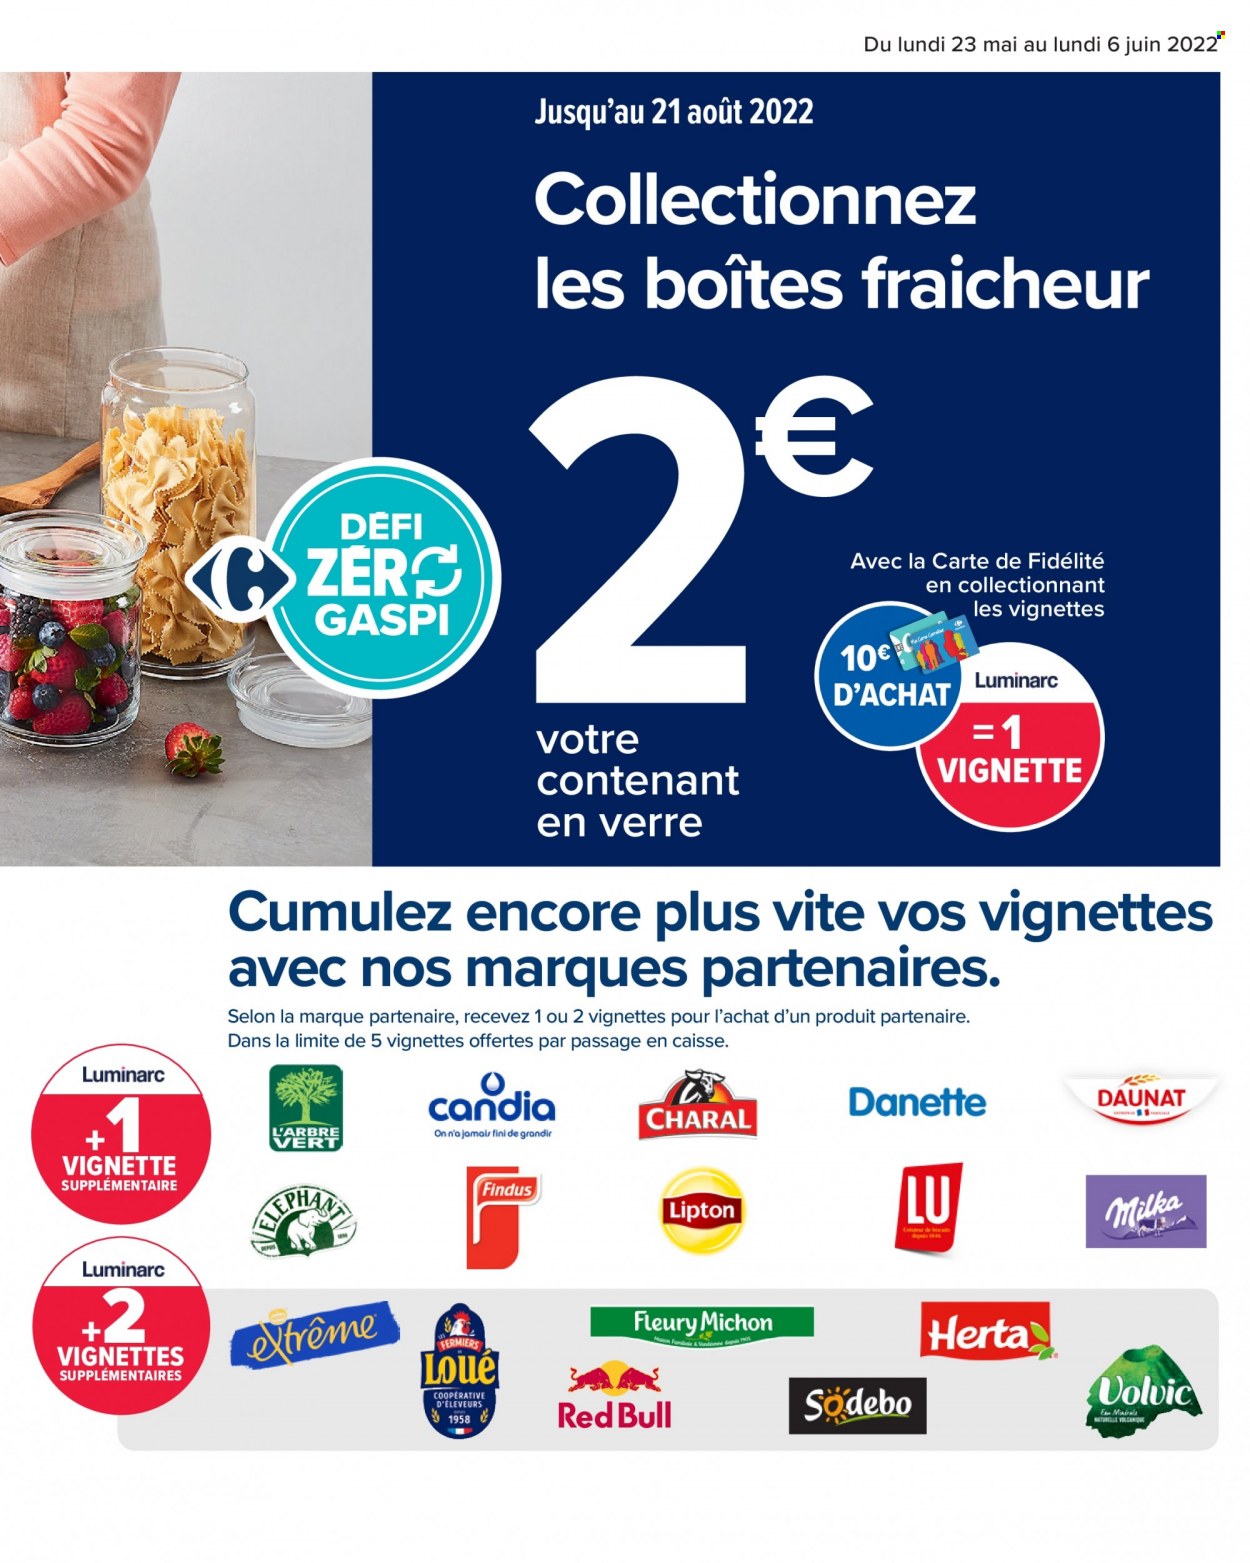 thumbnail - Catalogue Carrefour Hypermarchés - 23/05/2022 - 06/06/2022 - Produits soldés - Findus, Fleury Michon, Sodebo, Herta, Danette, Milka, Candia, LU, Volvic, Lipton, L'Arbre Vert, verre. Page 9.